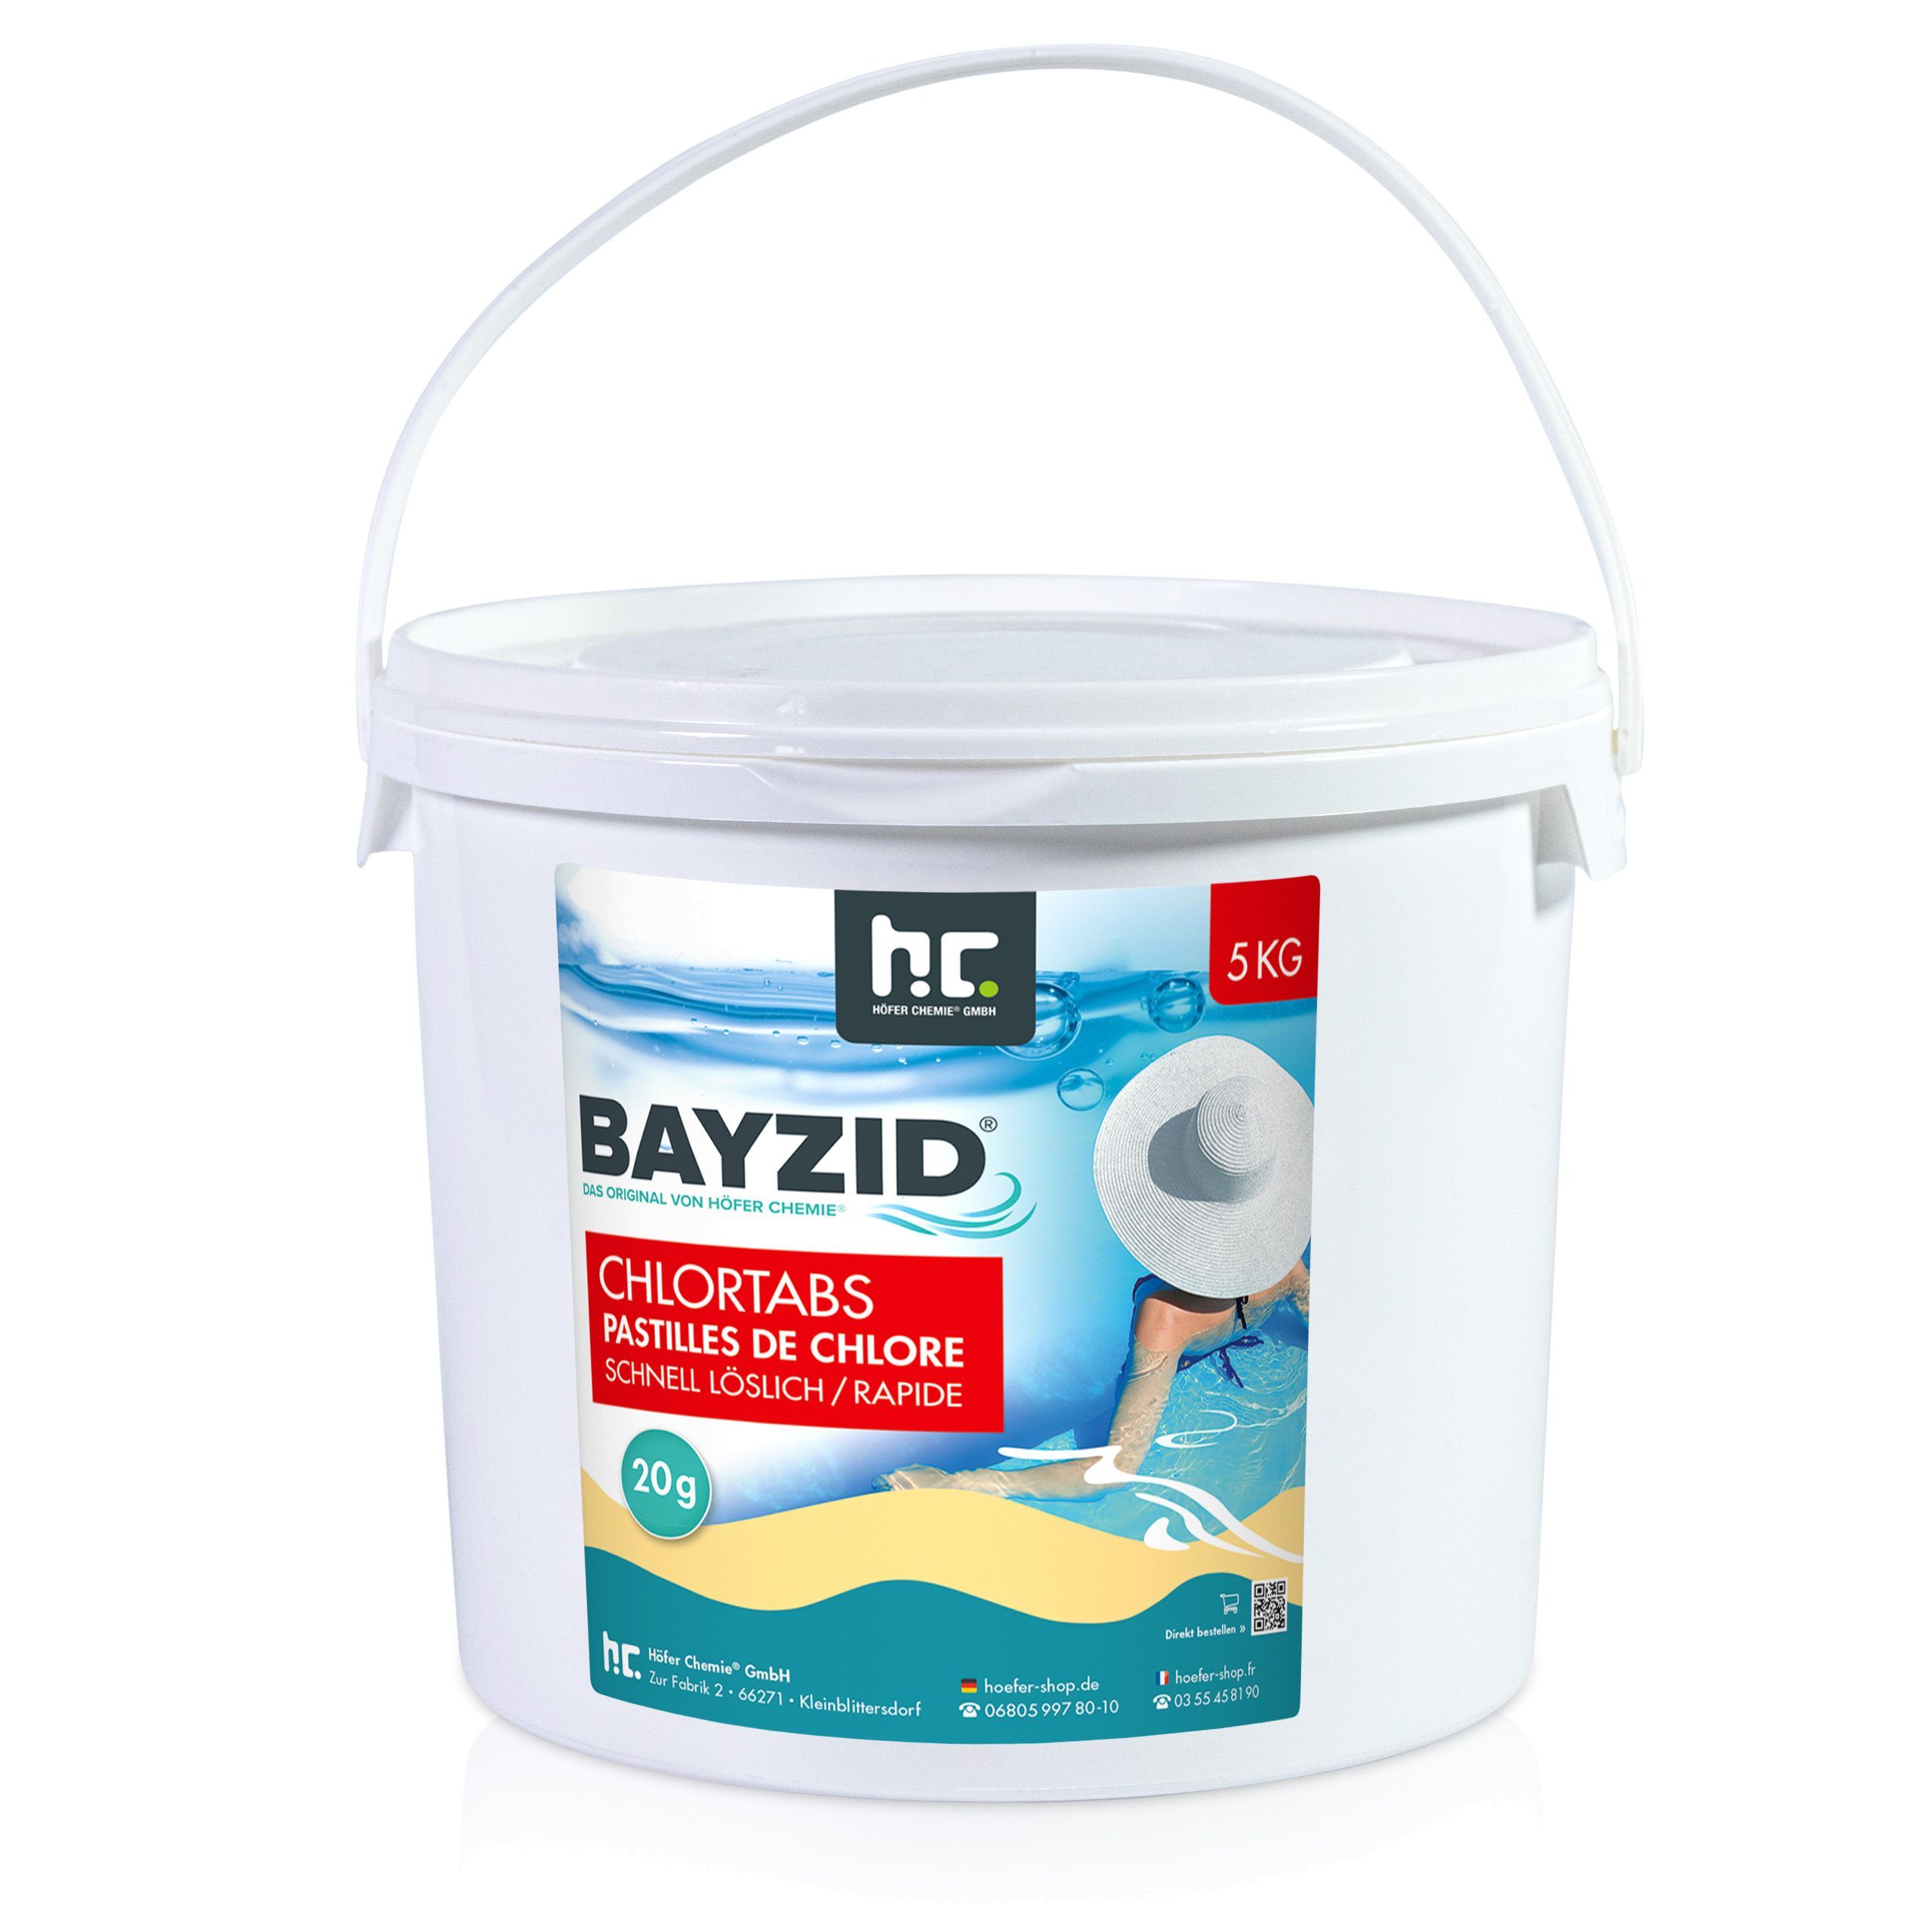 5 kg BAYZID® Chlortabs 20g schnell löslich